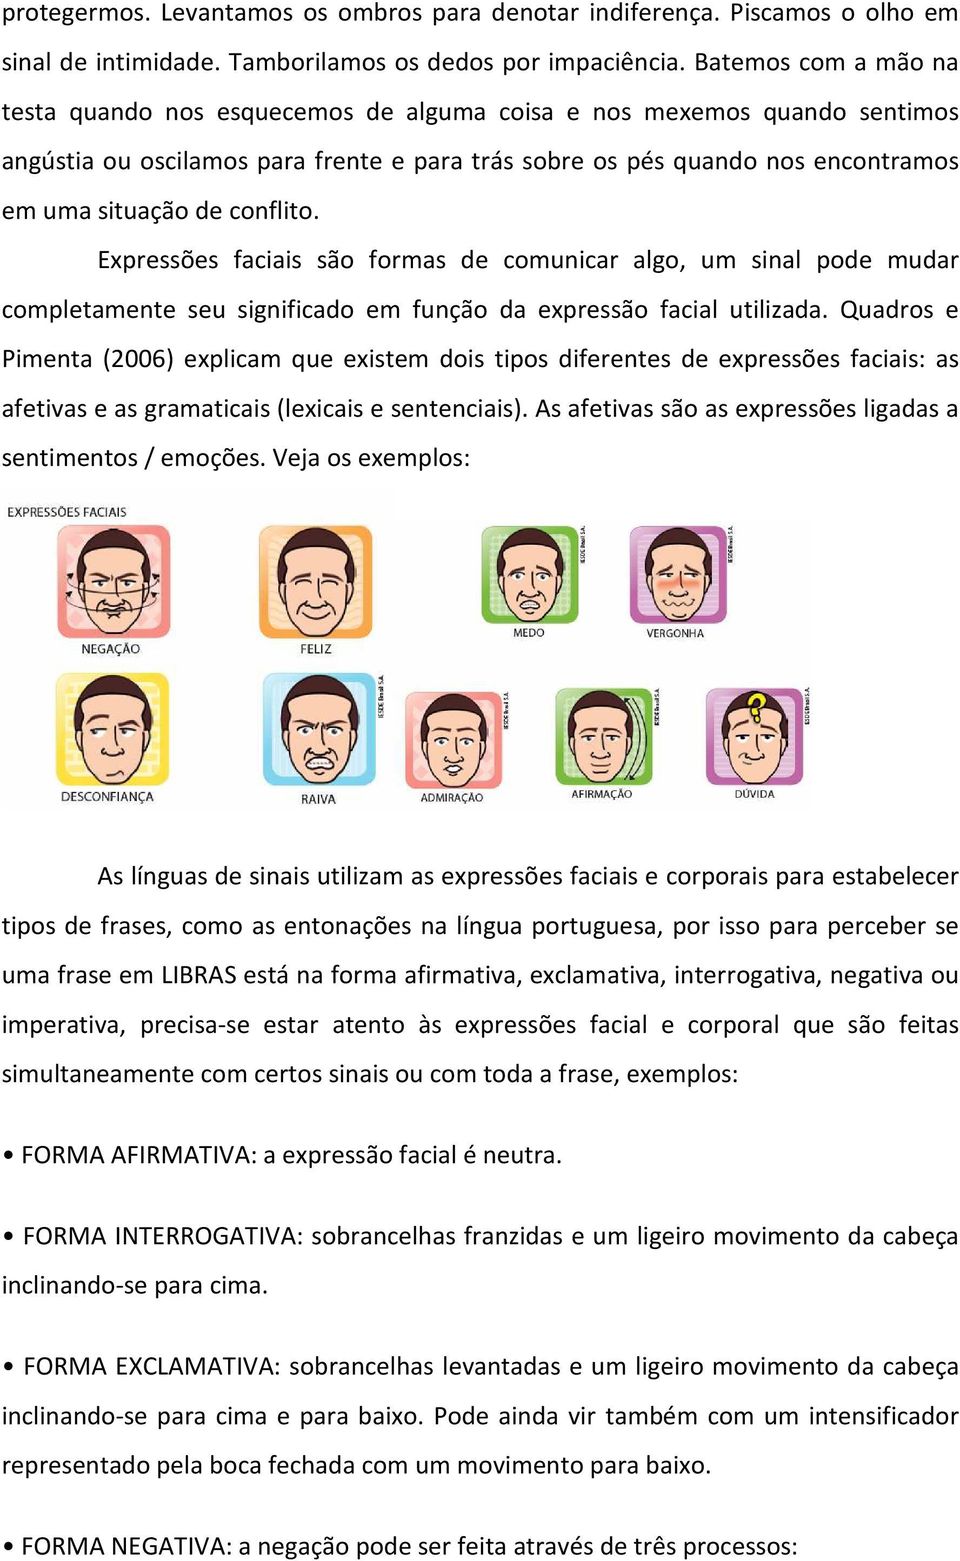 conflito. Expressões faciais são formas de comunicar algo, um sinal pode mudar completamente seu significado em função da expressão facial utilizada.